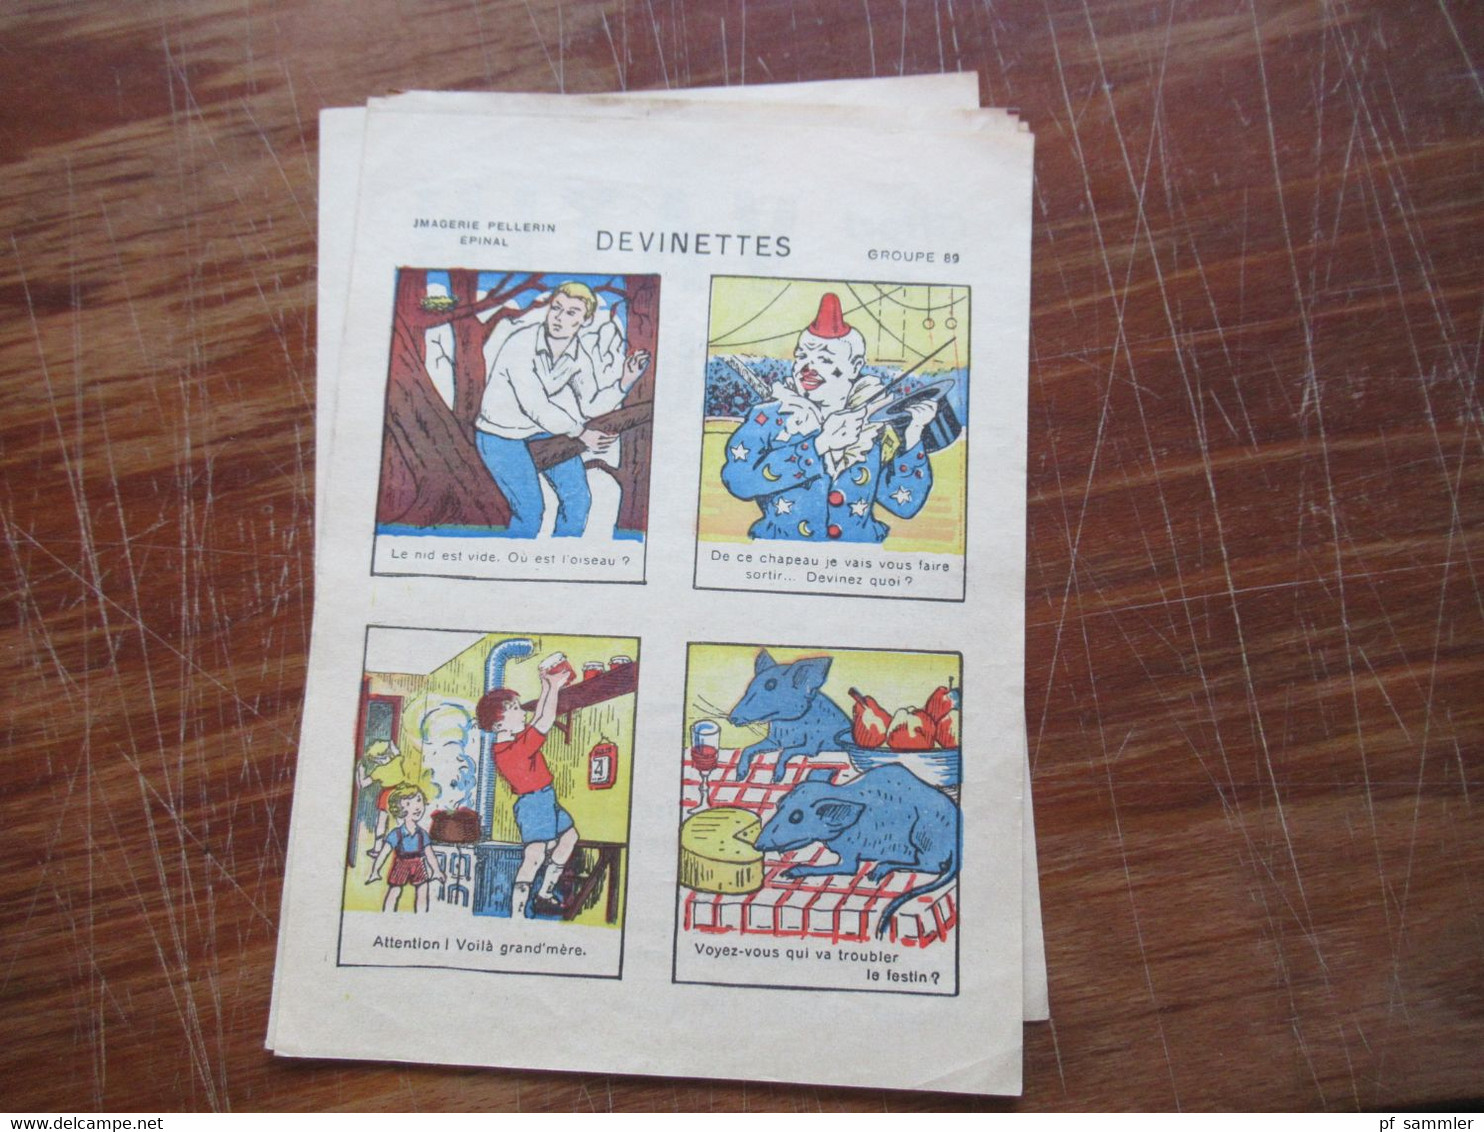 Frankreich Devinettes Sammlung mit 23 Stück / verschiedene Motive ca. 1940 / 50er jahre